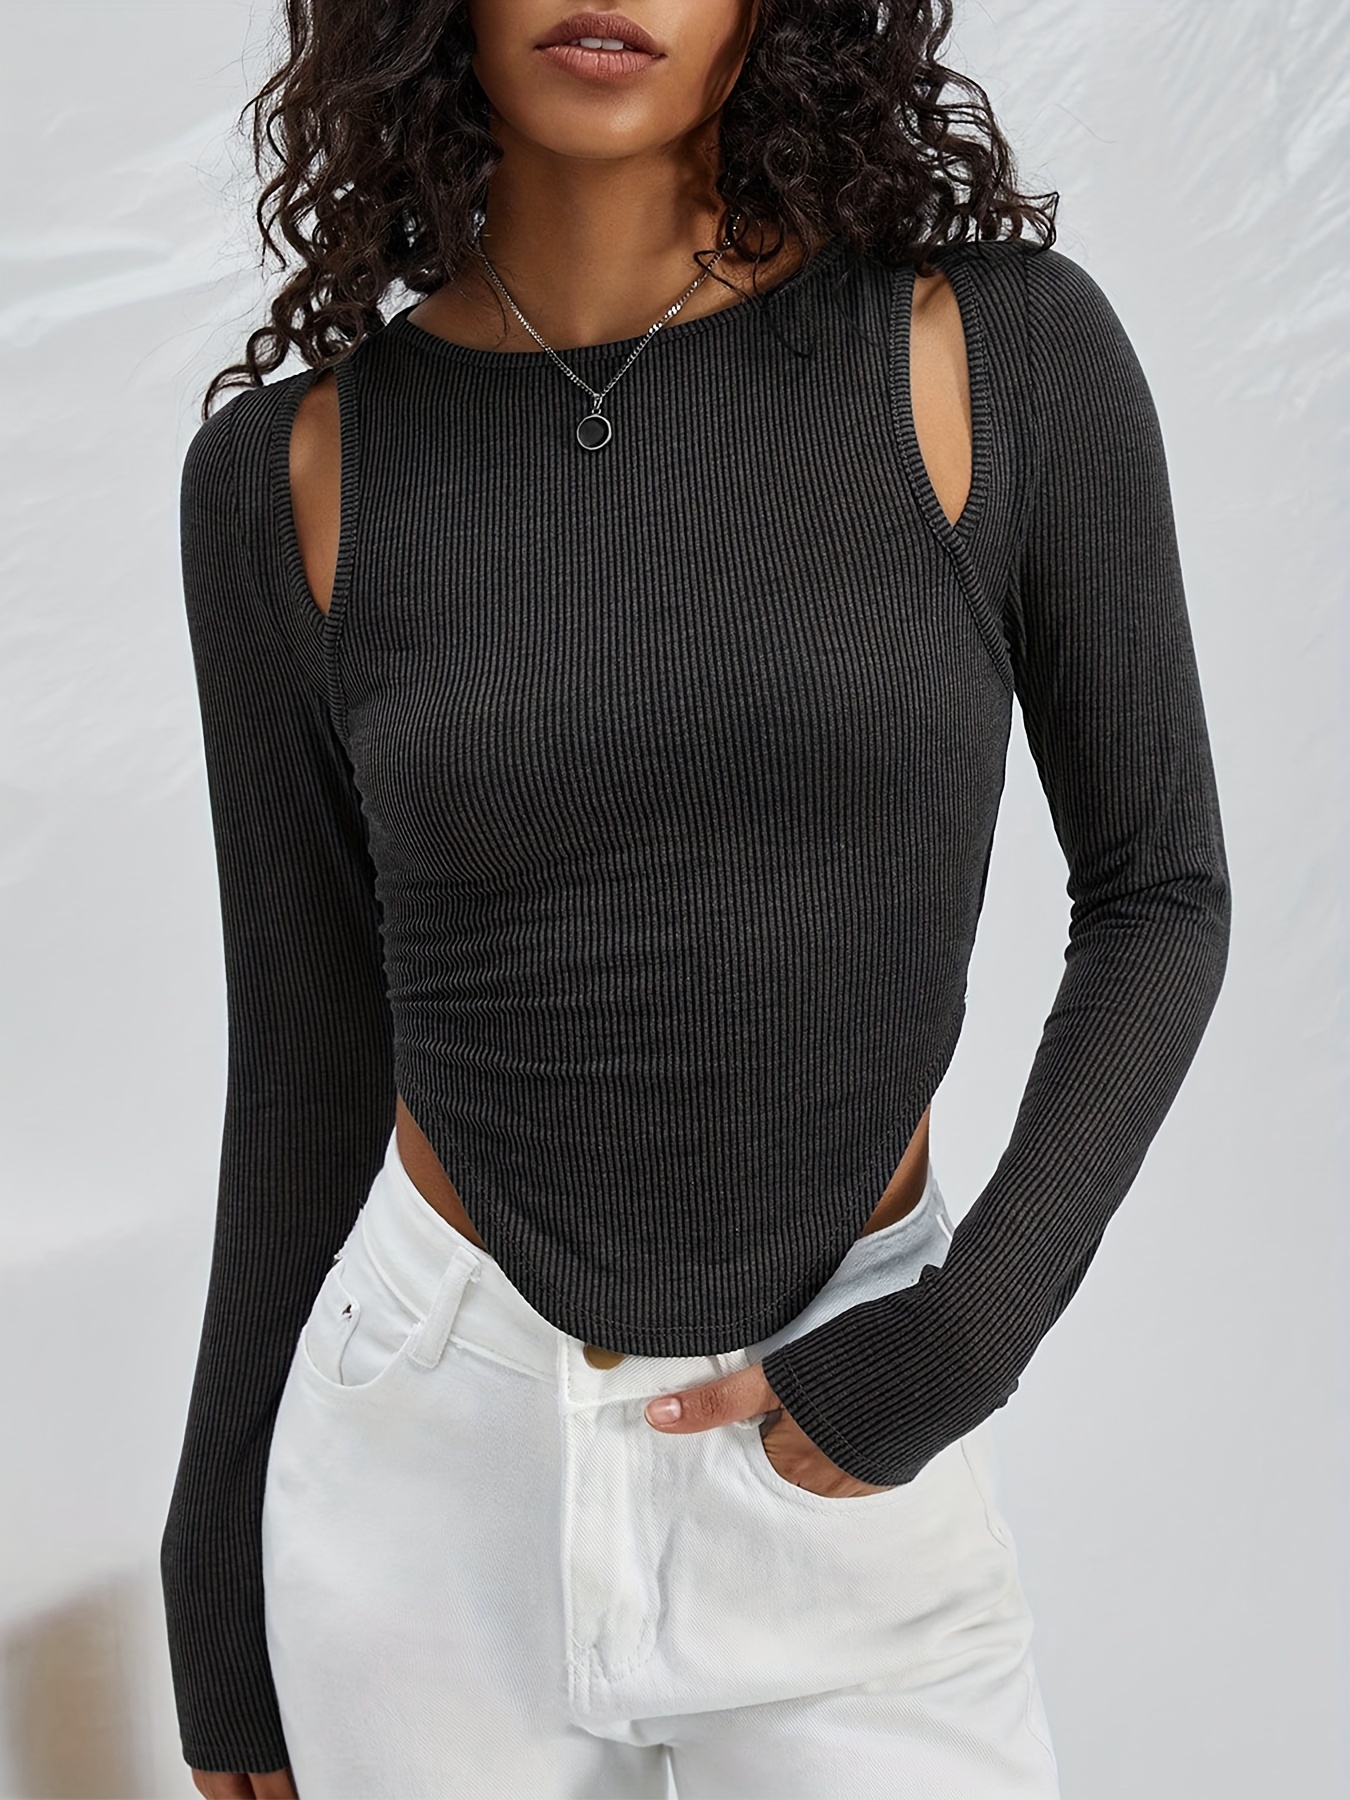 Camisas Mujer manga larga negras